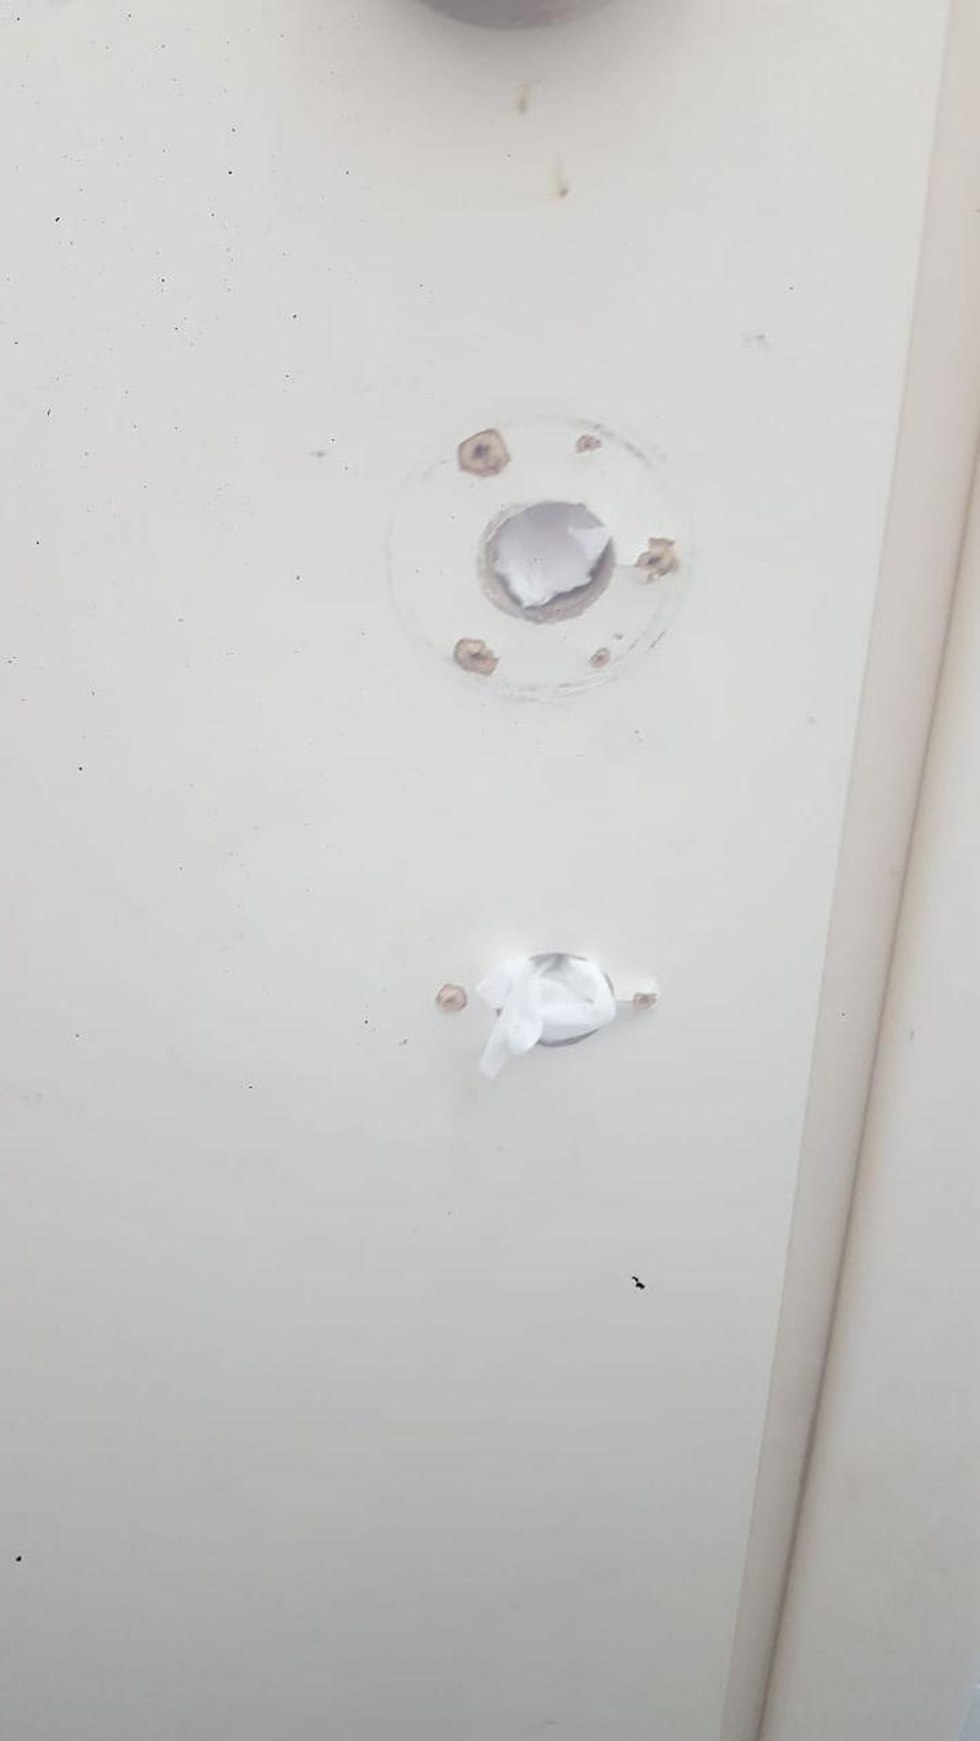 דלת הרוסה בביתו של זייד אלעמורי (צילום: זייד אלעמורי)